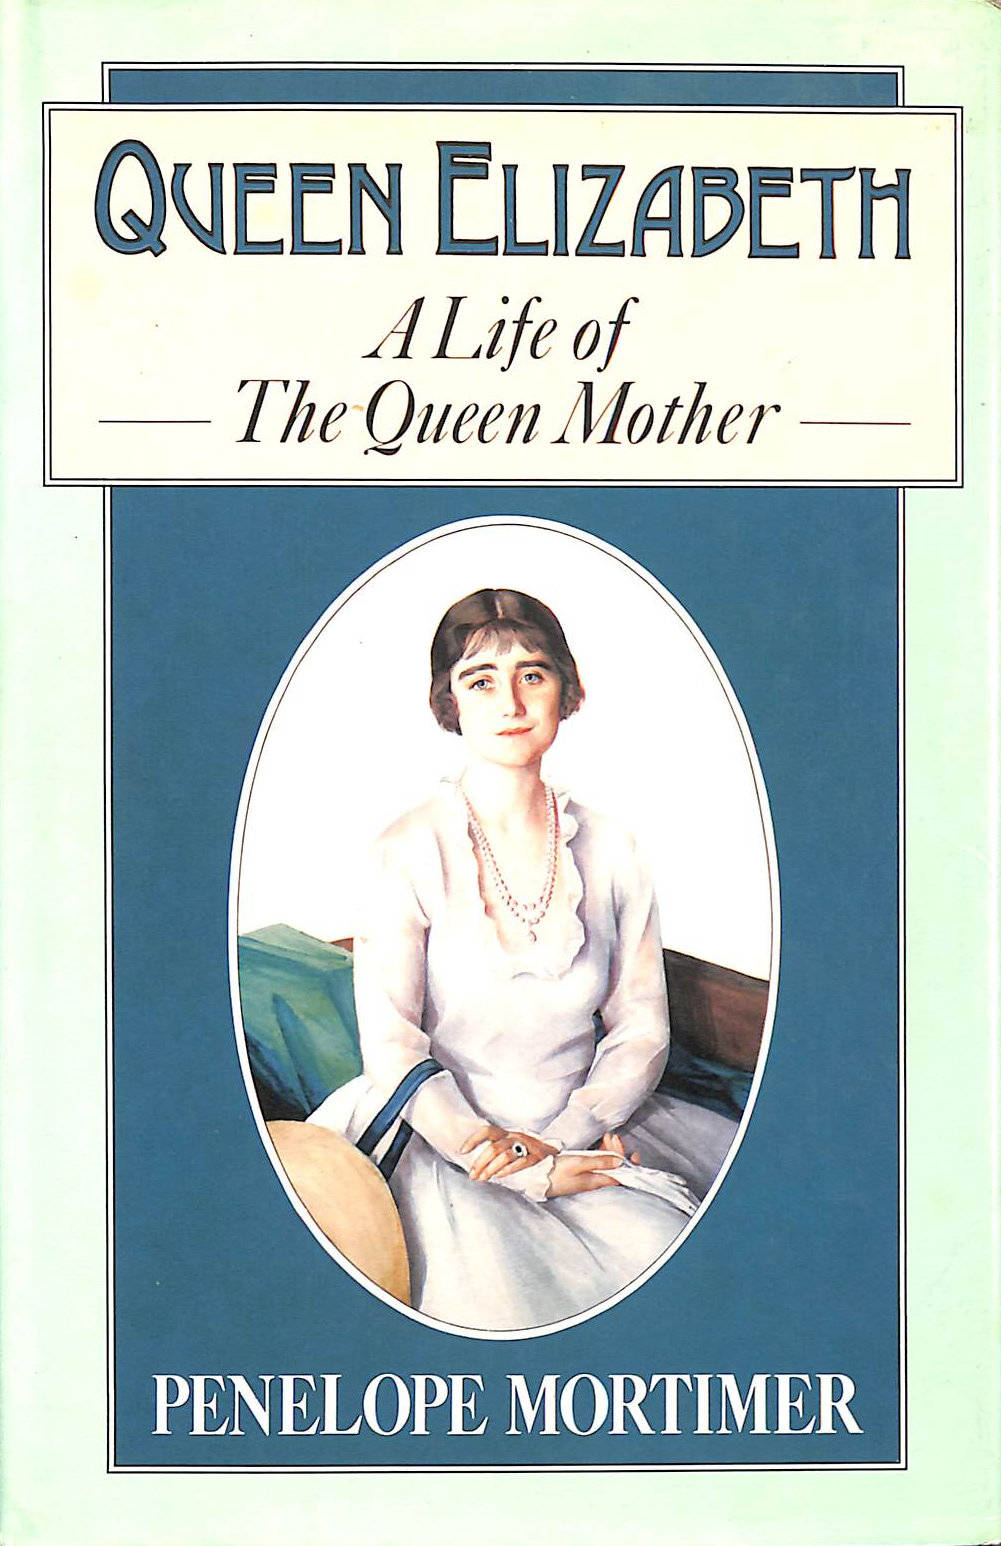 MORTIMER, PENELOPE - Queen Elizabeth: A Life of the Queen Mother